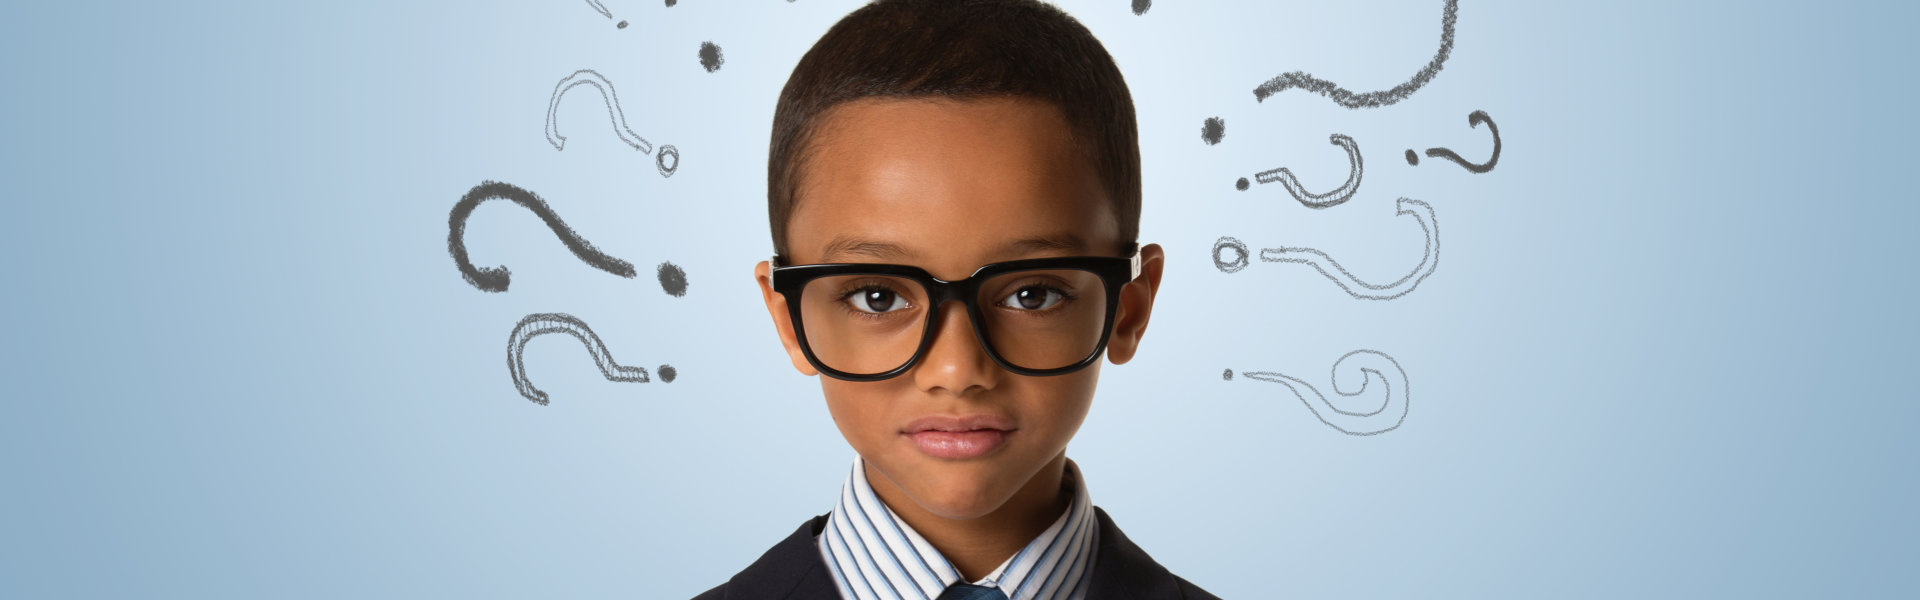 A young boy wearing eye glass